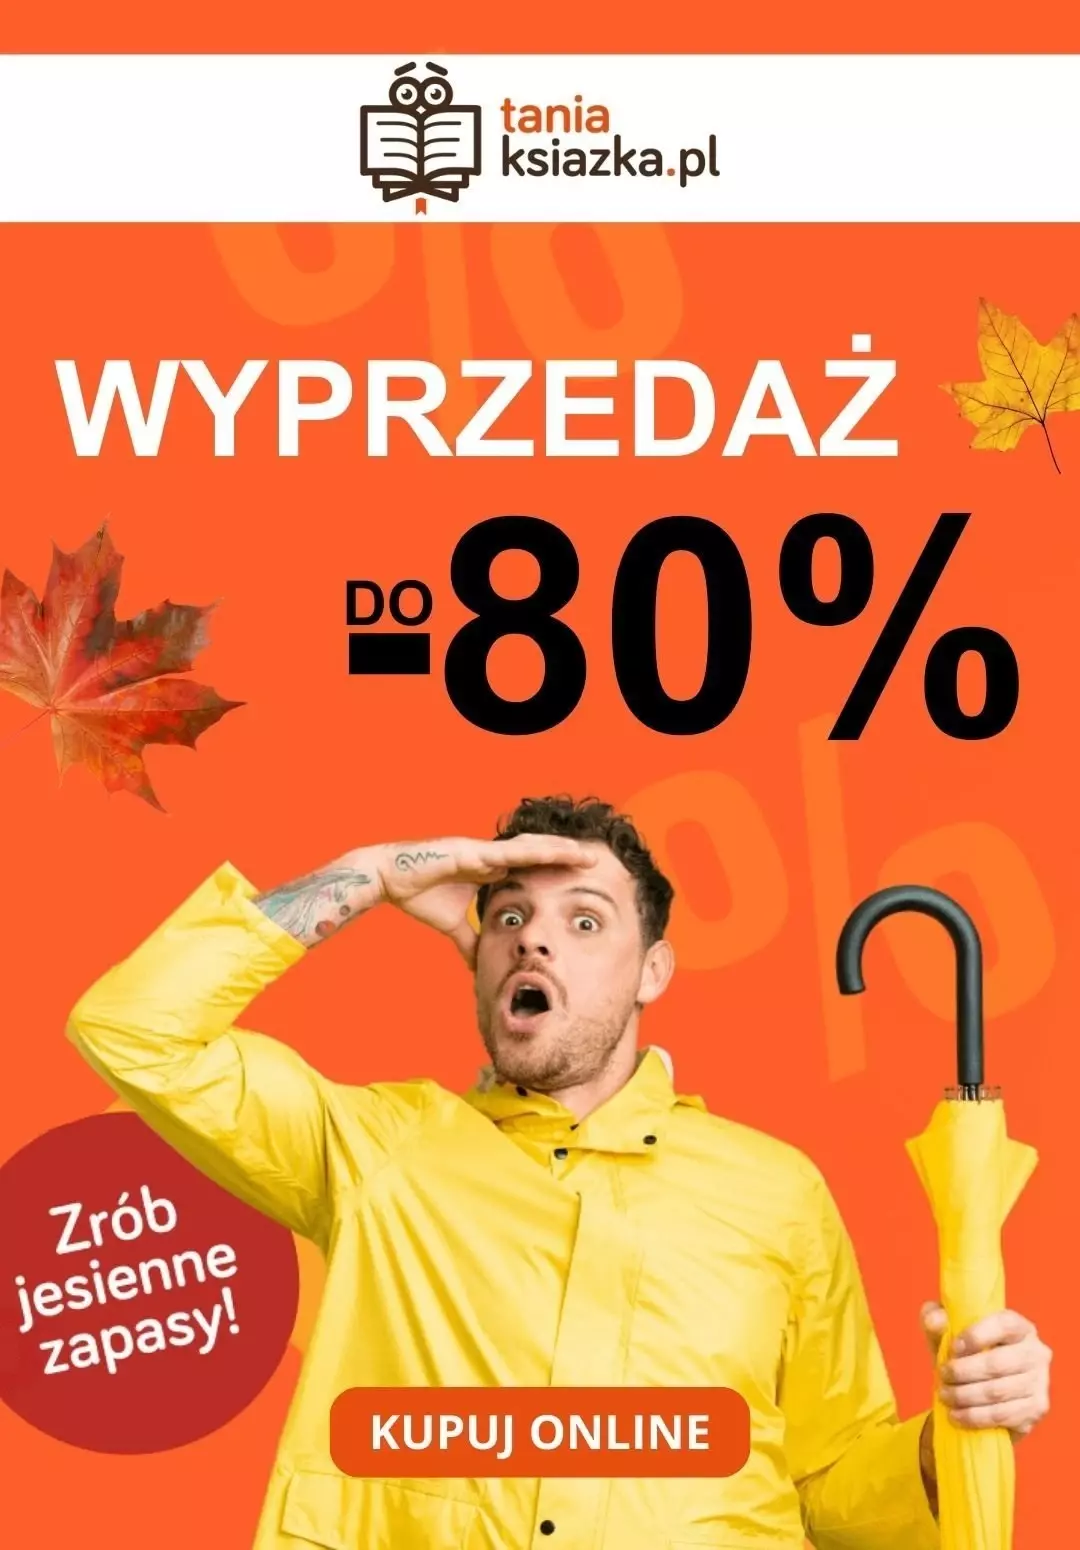 taniaksiazka.pl - gazetka promocyjna Do -80% Wyprzedaż od środy 27.09 do poniedziałku 09.10